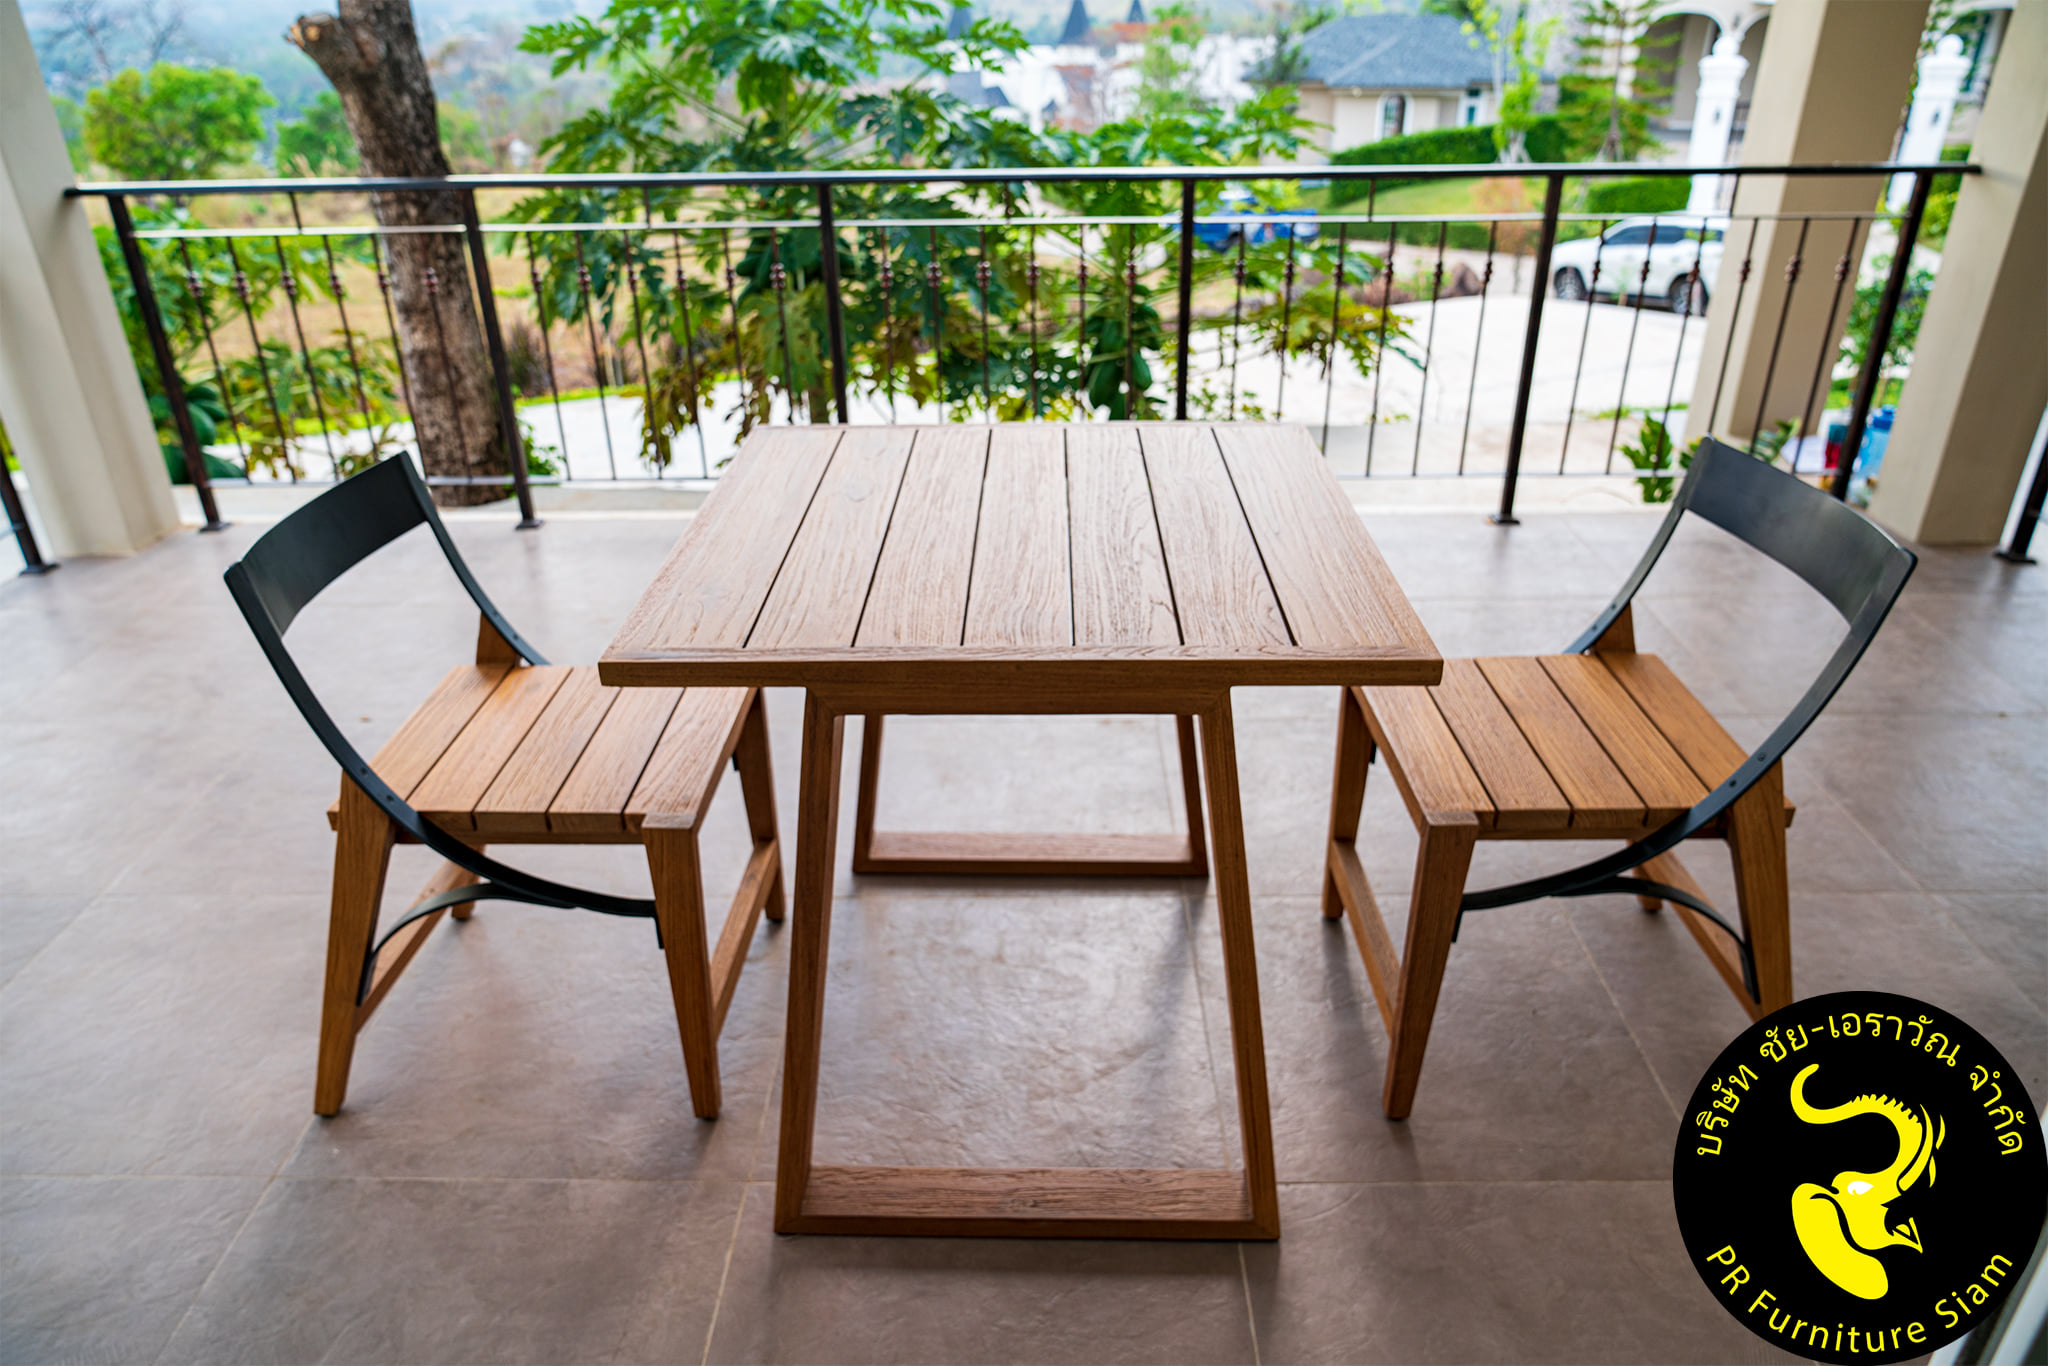 ชุดโต๊ะเก้าอี้ไม้สัก 2 ที่นั่ง แบบ Outdoor